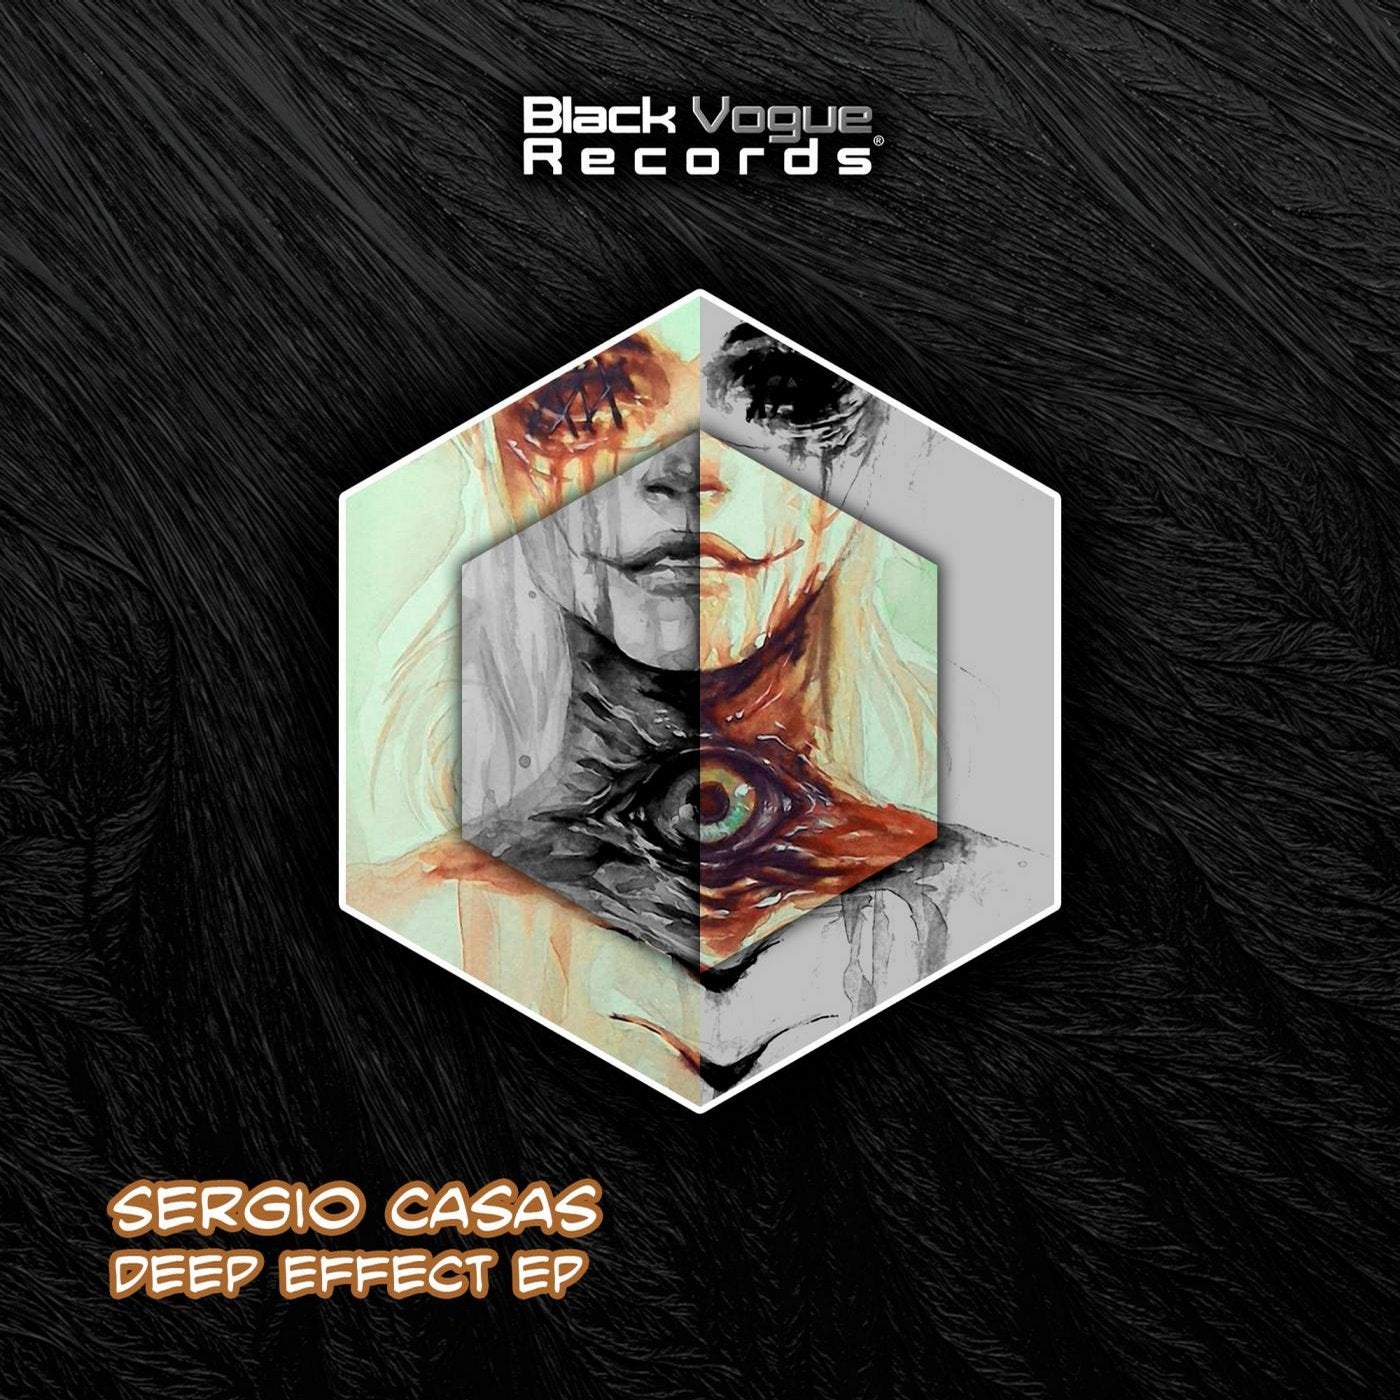 Deep Effect EP